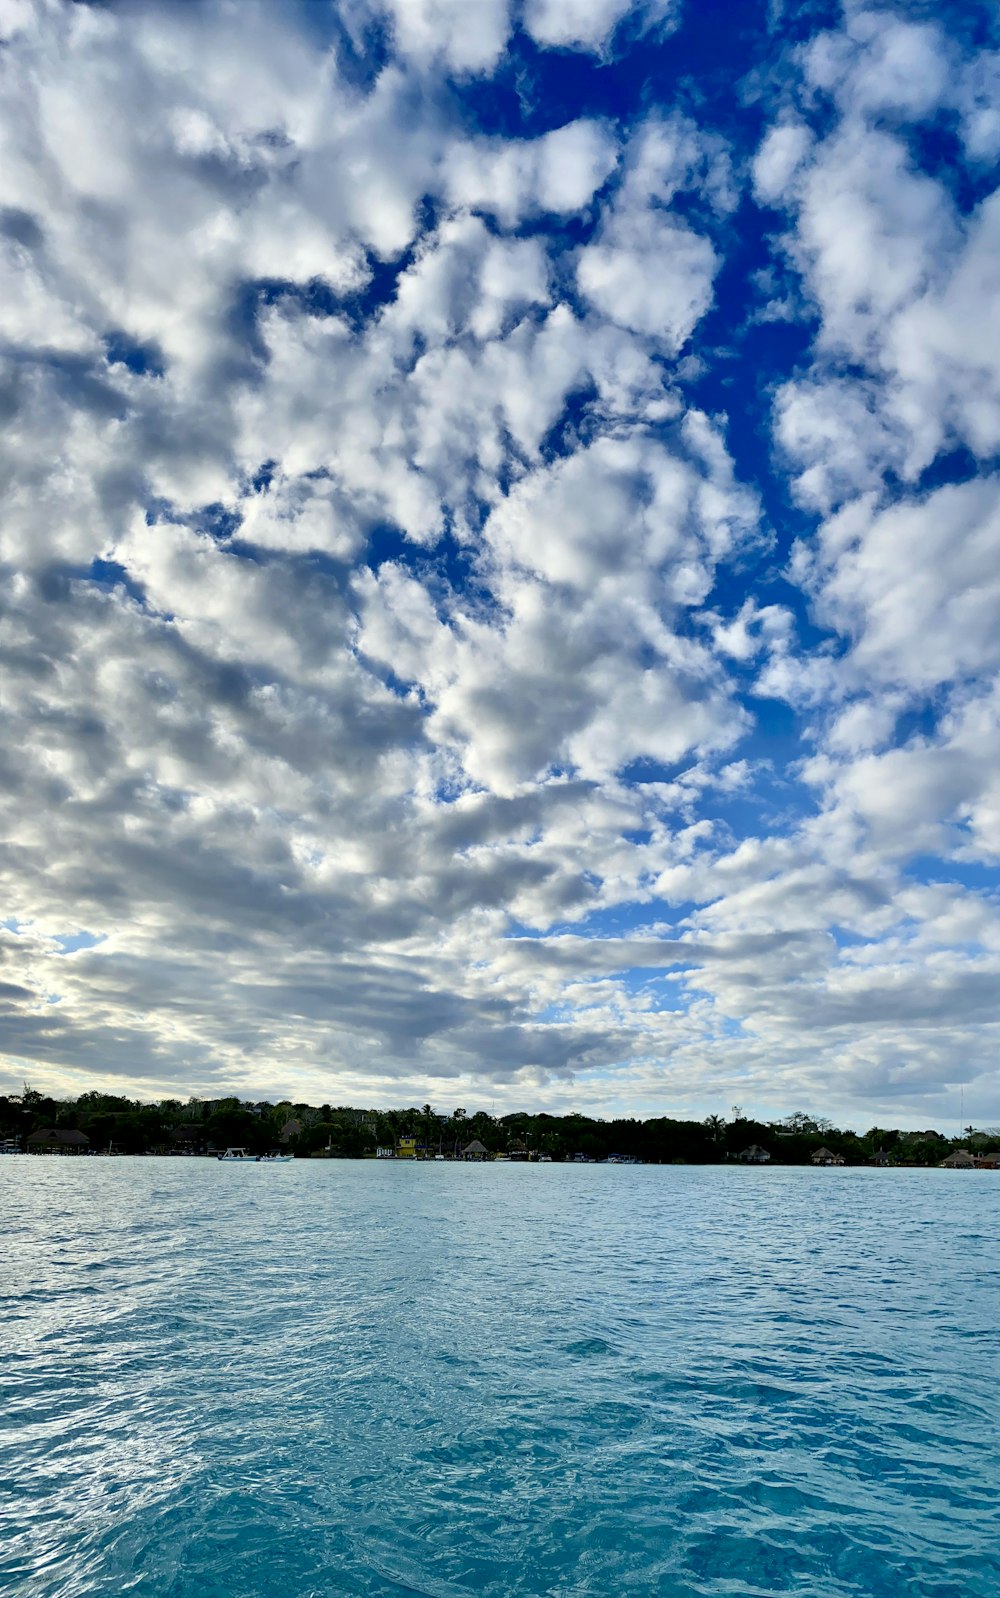 Cuerpo de agua bajo el cielo azul y nubes blancas durante el día